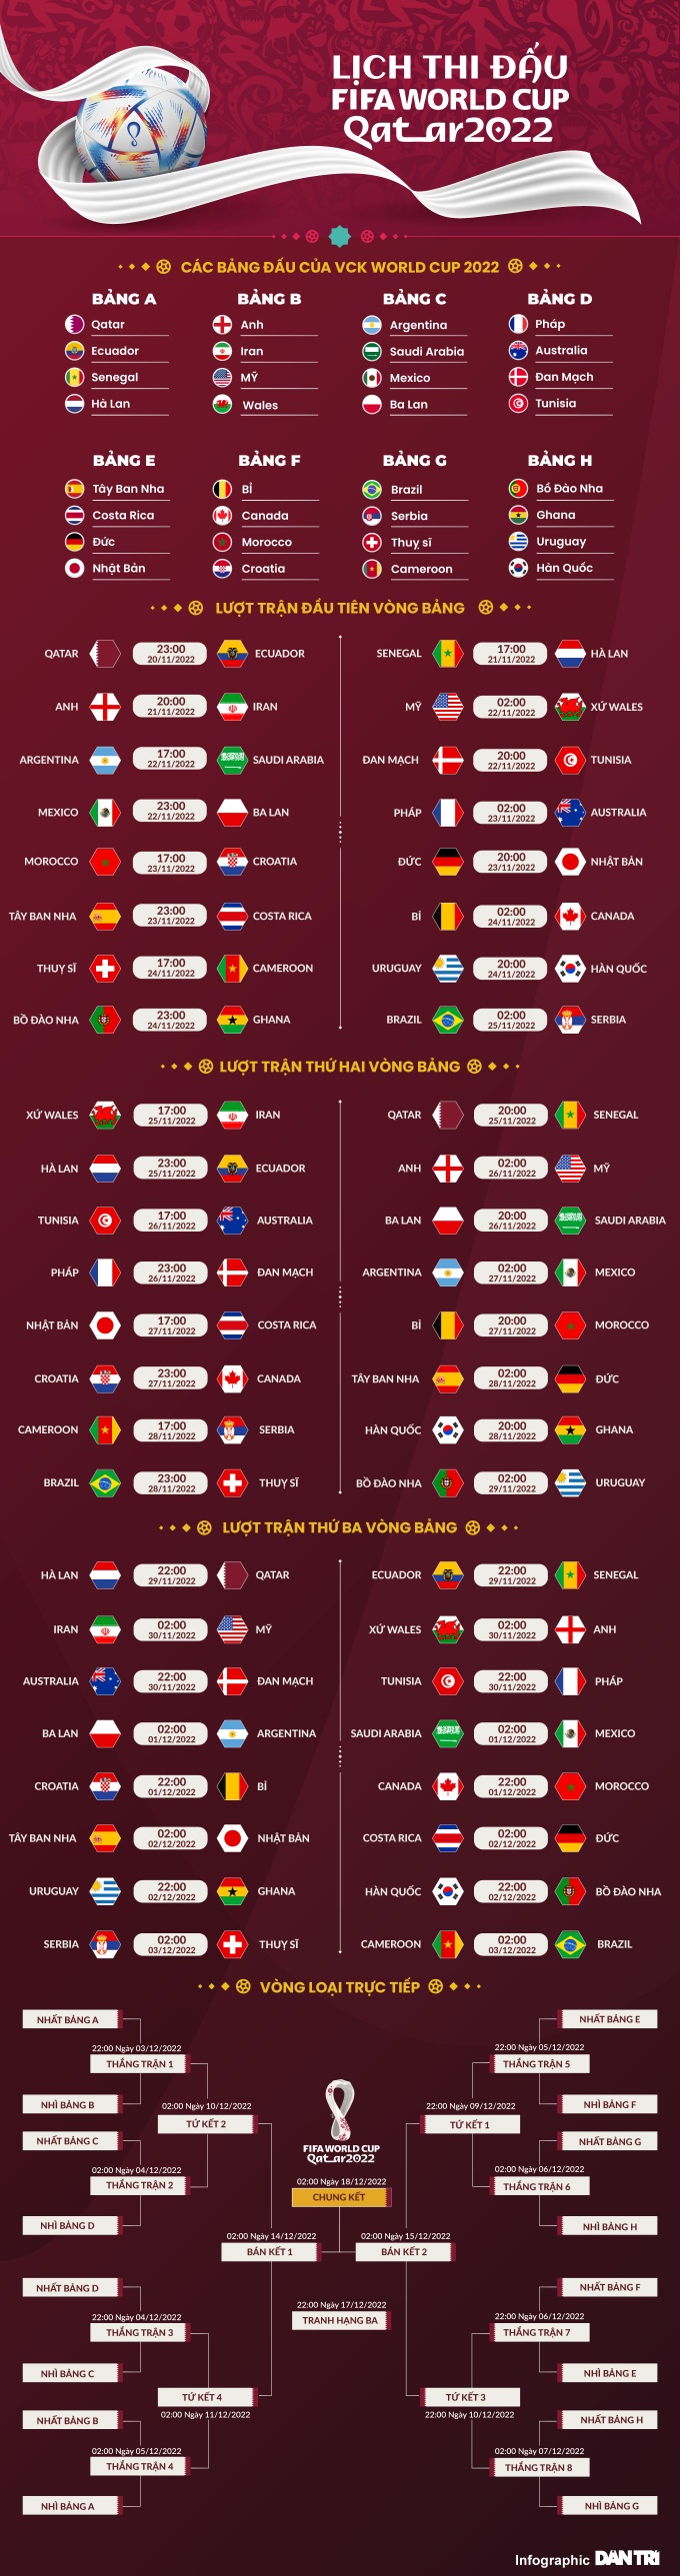 Mức giá bản quyền truyền thông World Cup 2022 ở Đông Nam Á - 3